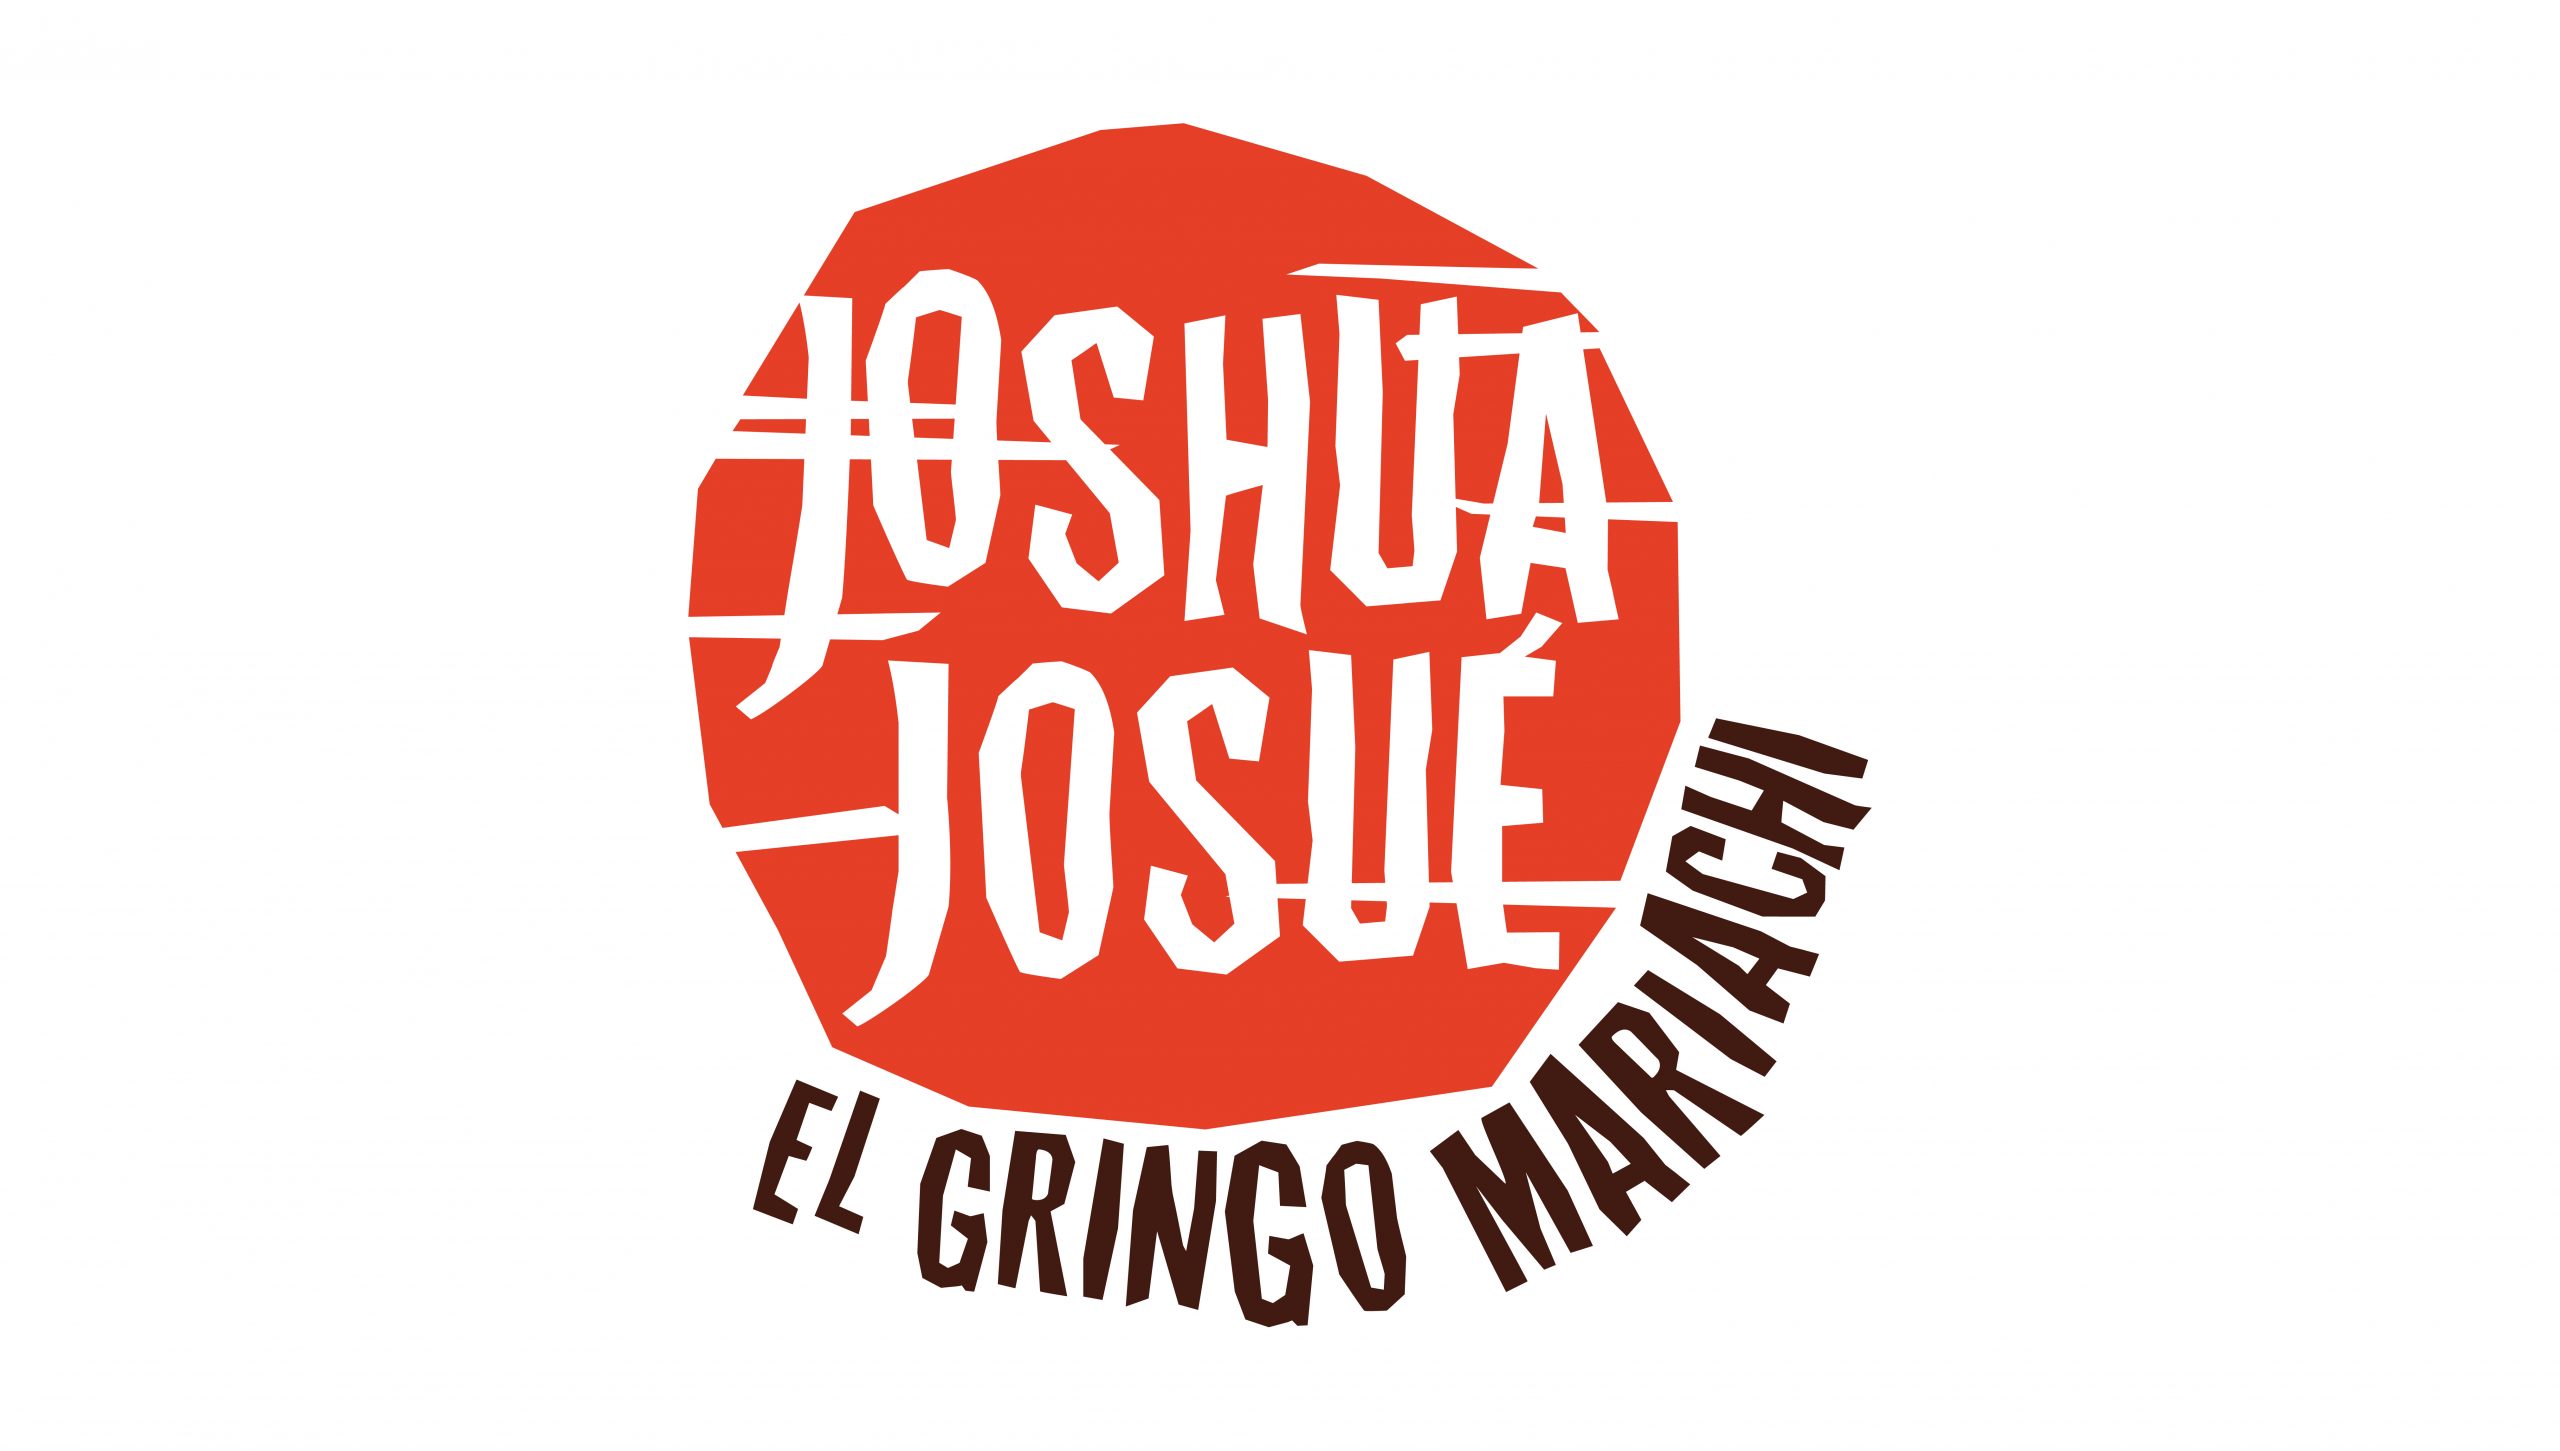 Joshua Josué El Gringo Mariachi color logo design